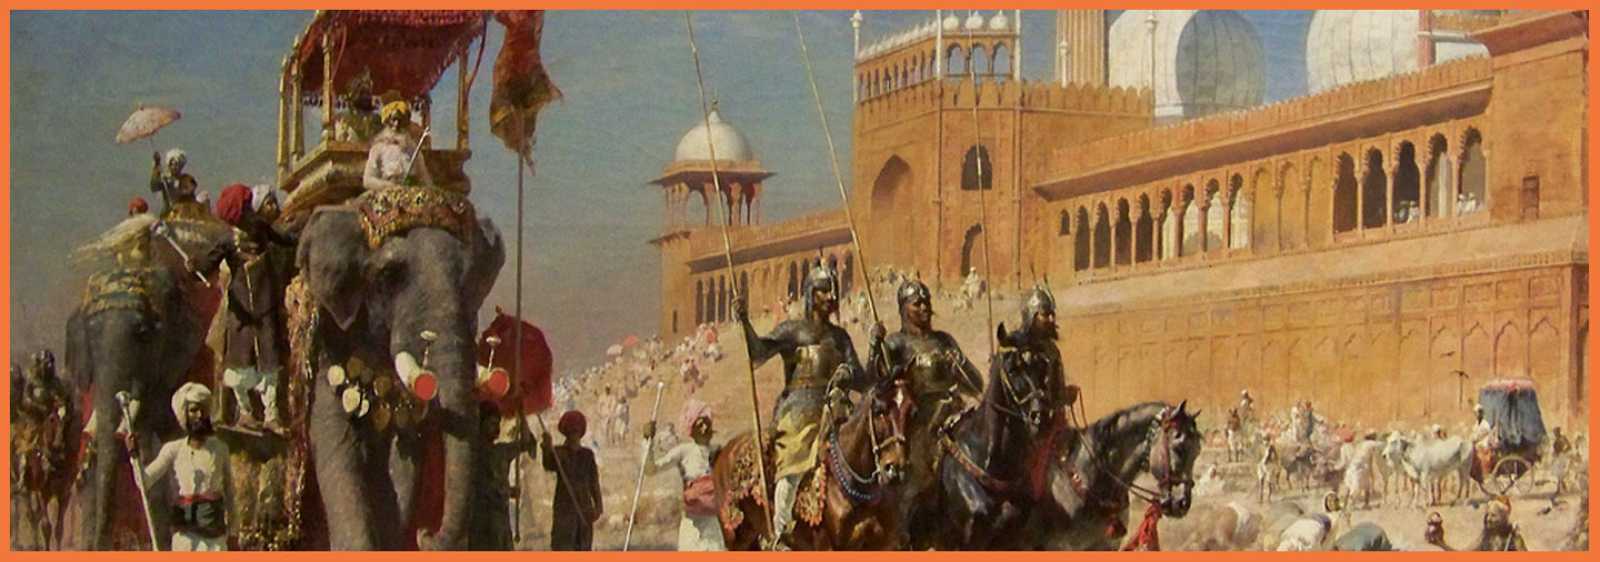 Оружие Османской империи, Индоиранского региона и Средней Азии